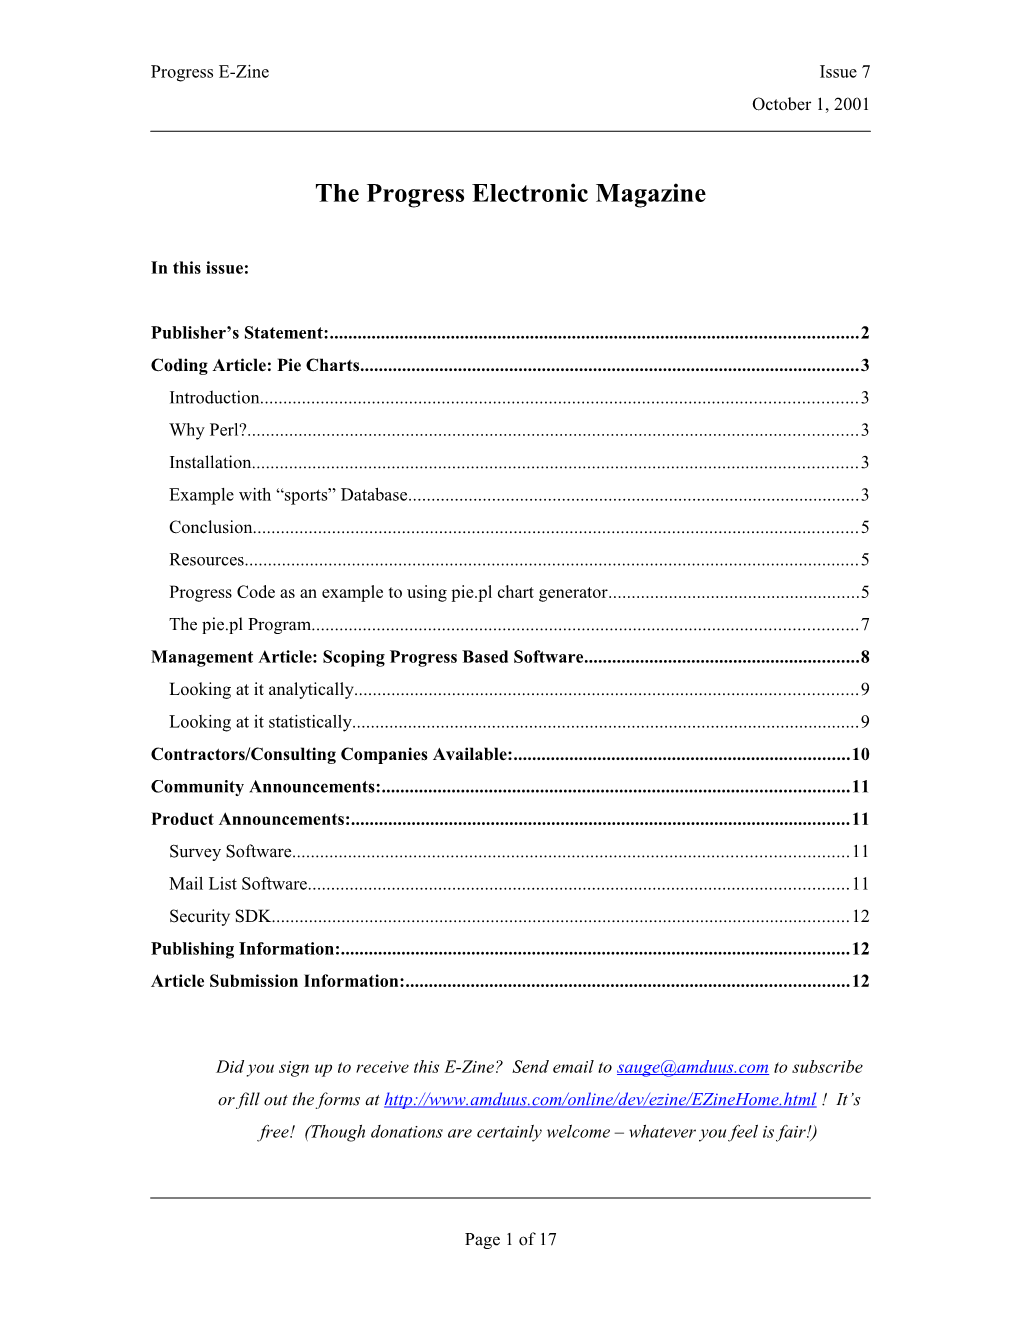 The Progress Electronic Magazine